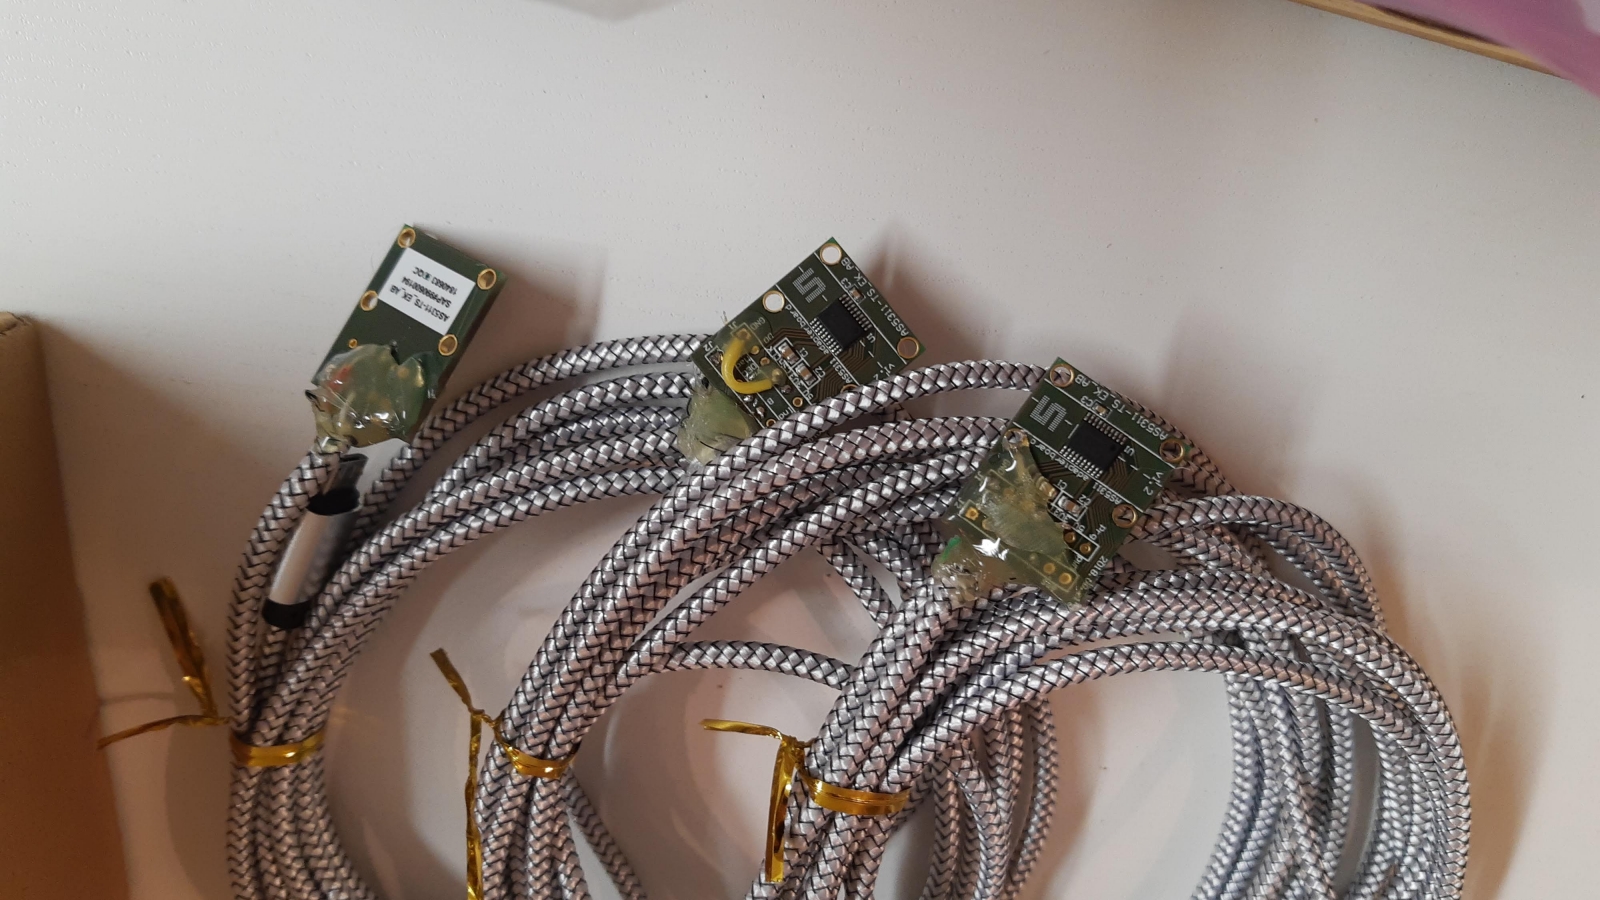 AS5311 boards mit USB-Kabeln verlötet und zur Sicherheit mit Heißkleber gesichert